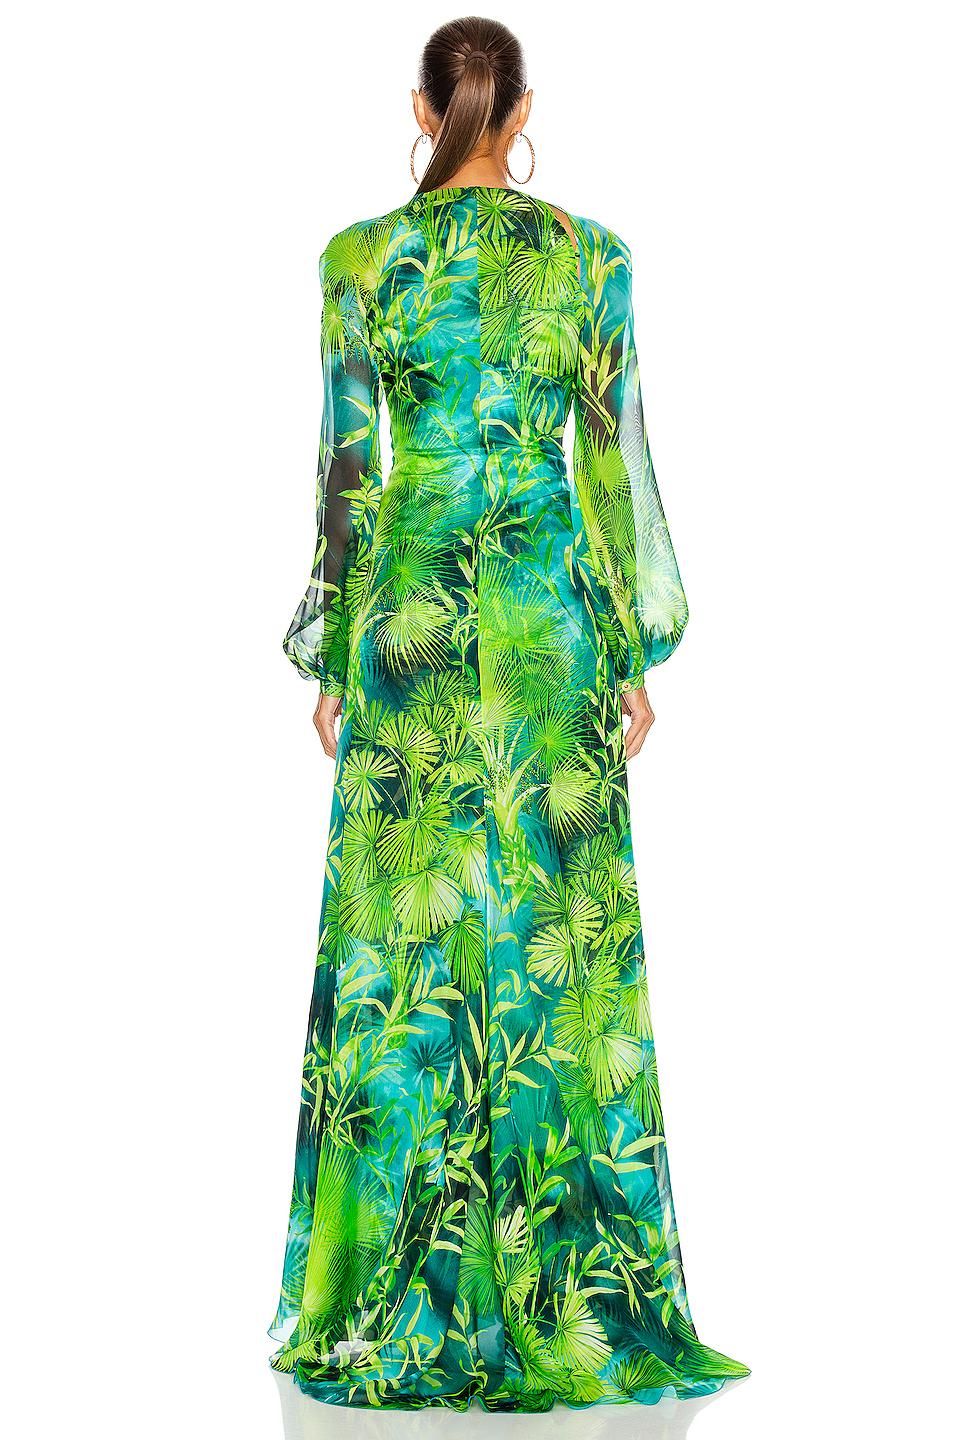 versace spring 2020 green & blue jungle print floor-length silk dress size 38